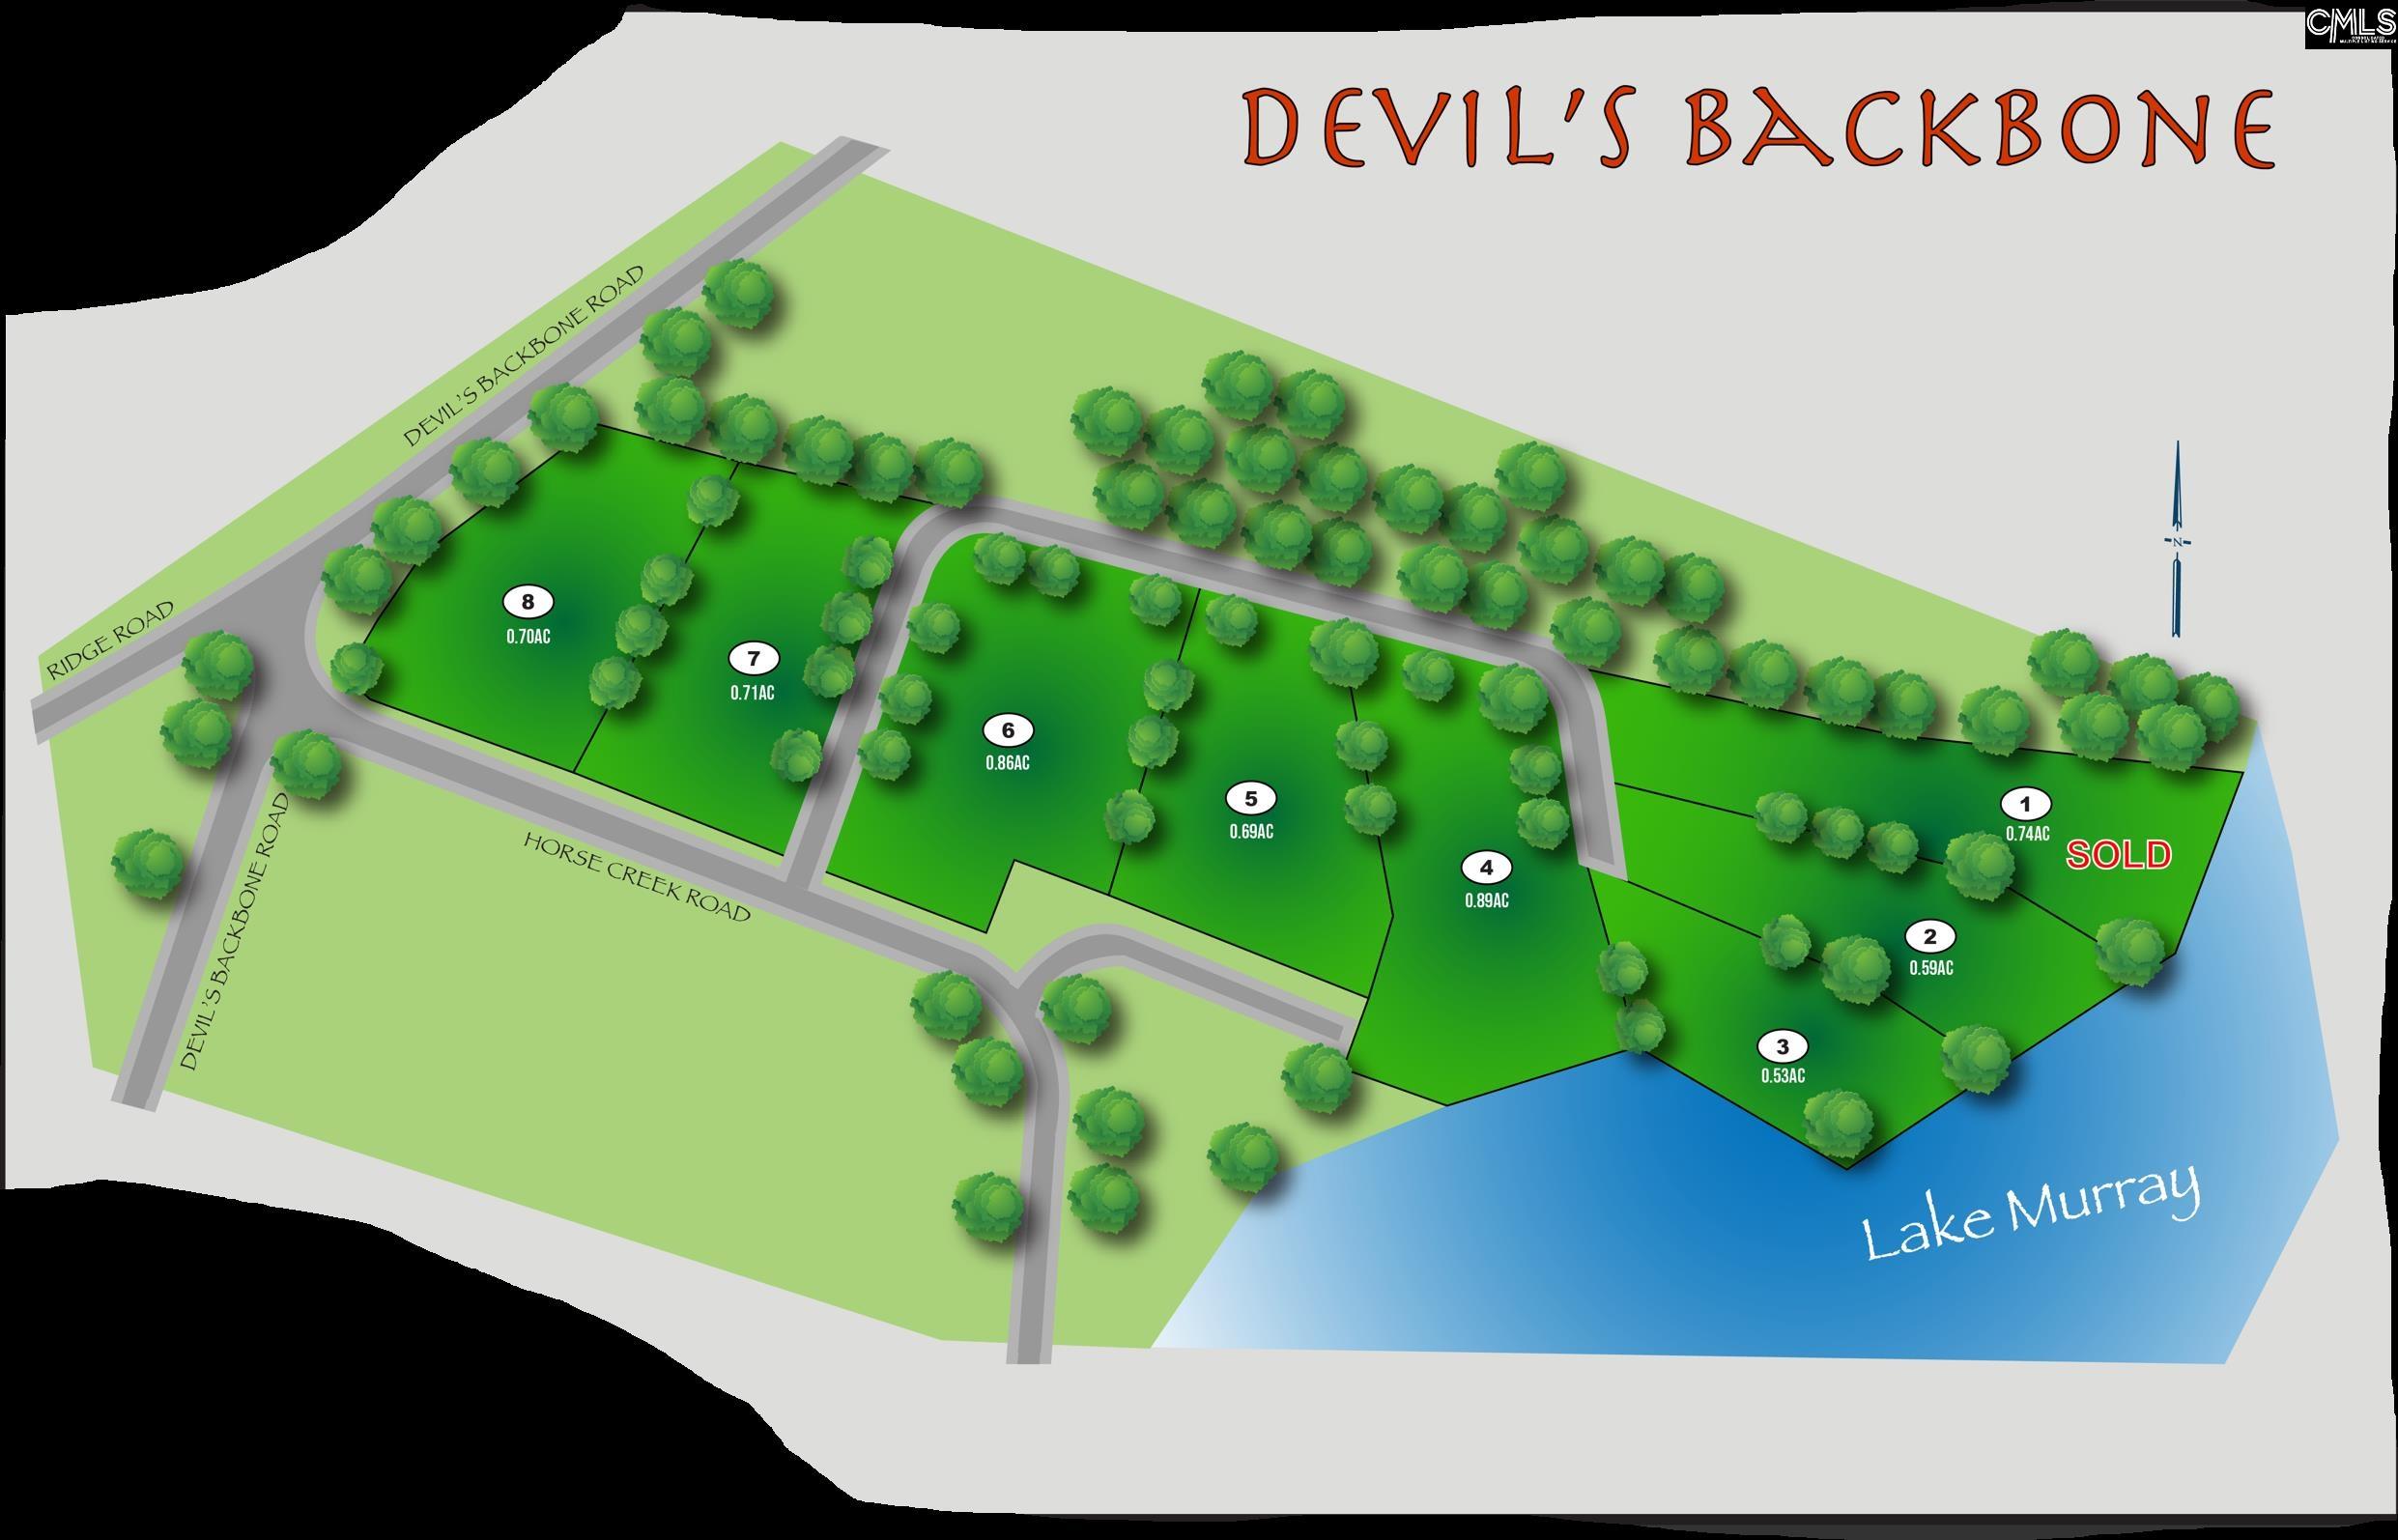 Devils Backbone Road #8, Leesville, South Carolina image 2